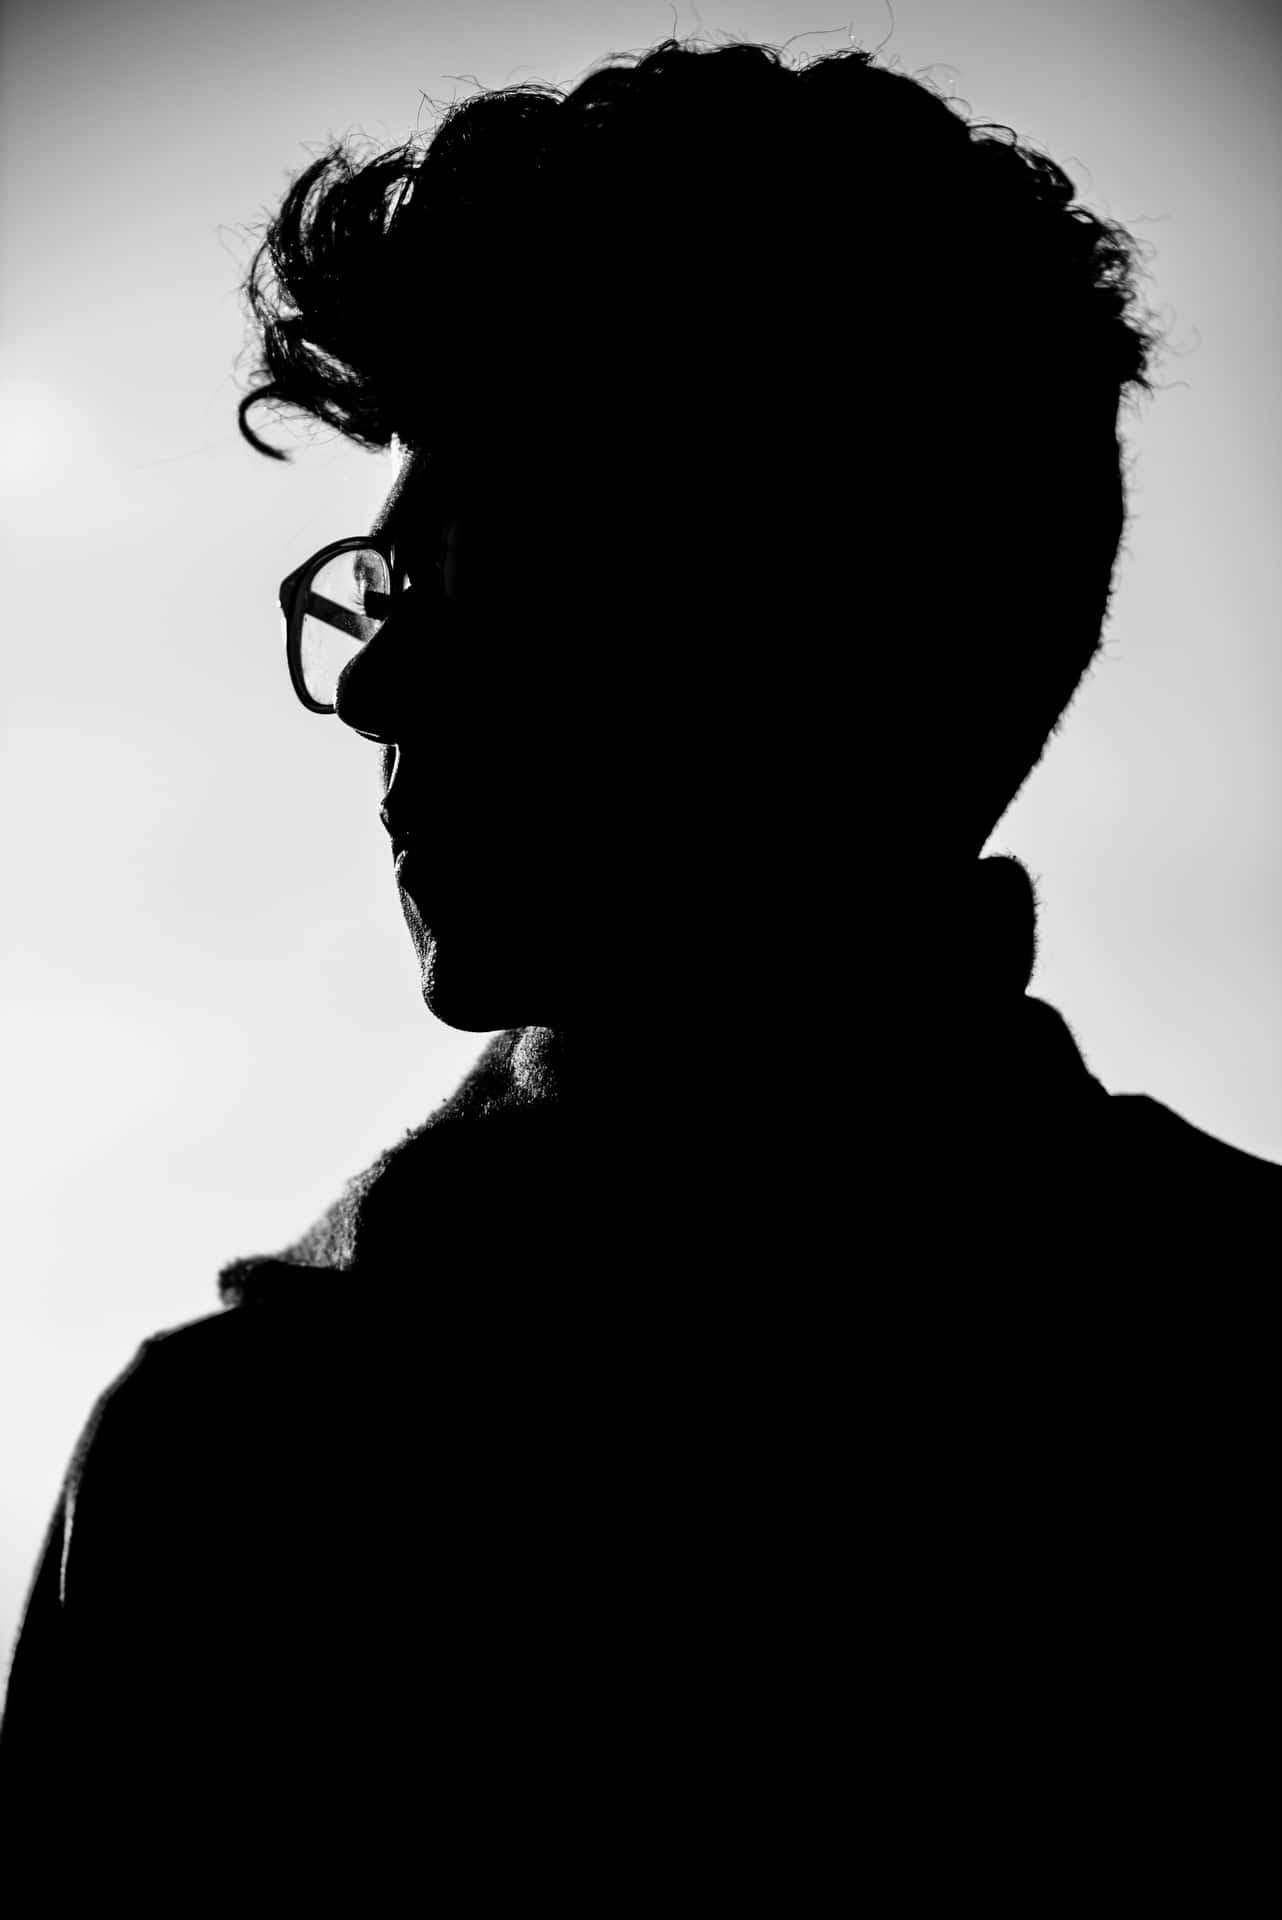 Man With Glasses Silhouette Dark Profile Picture